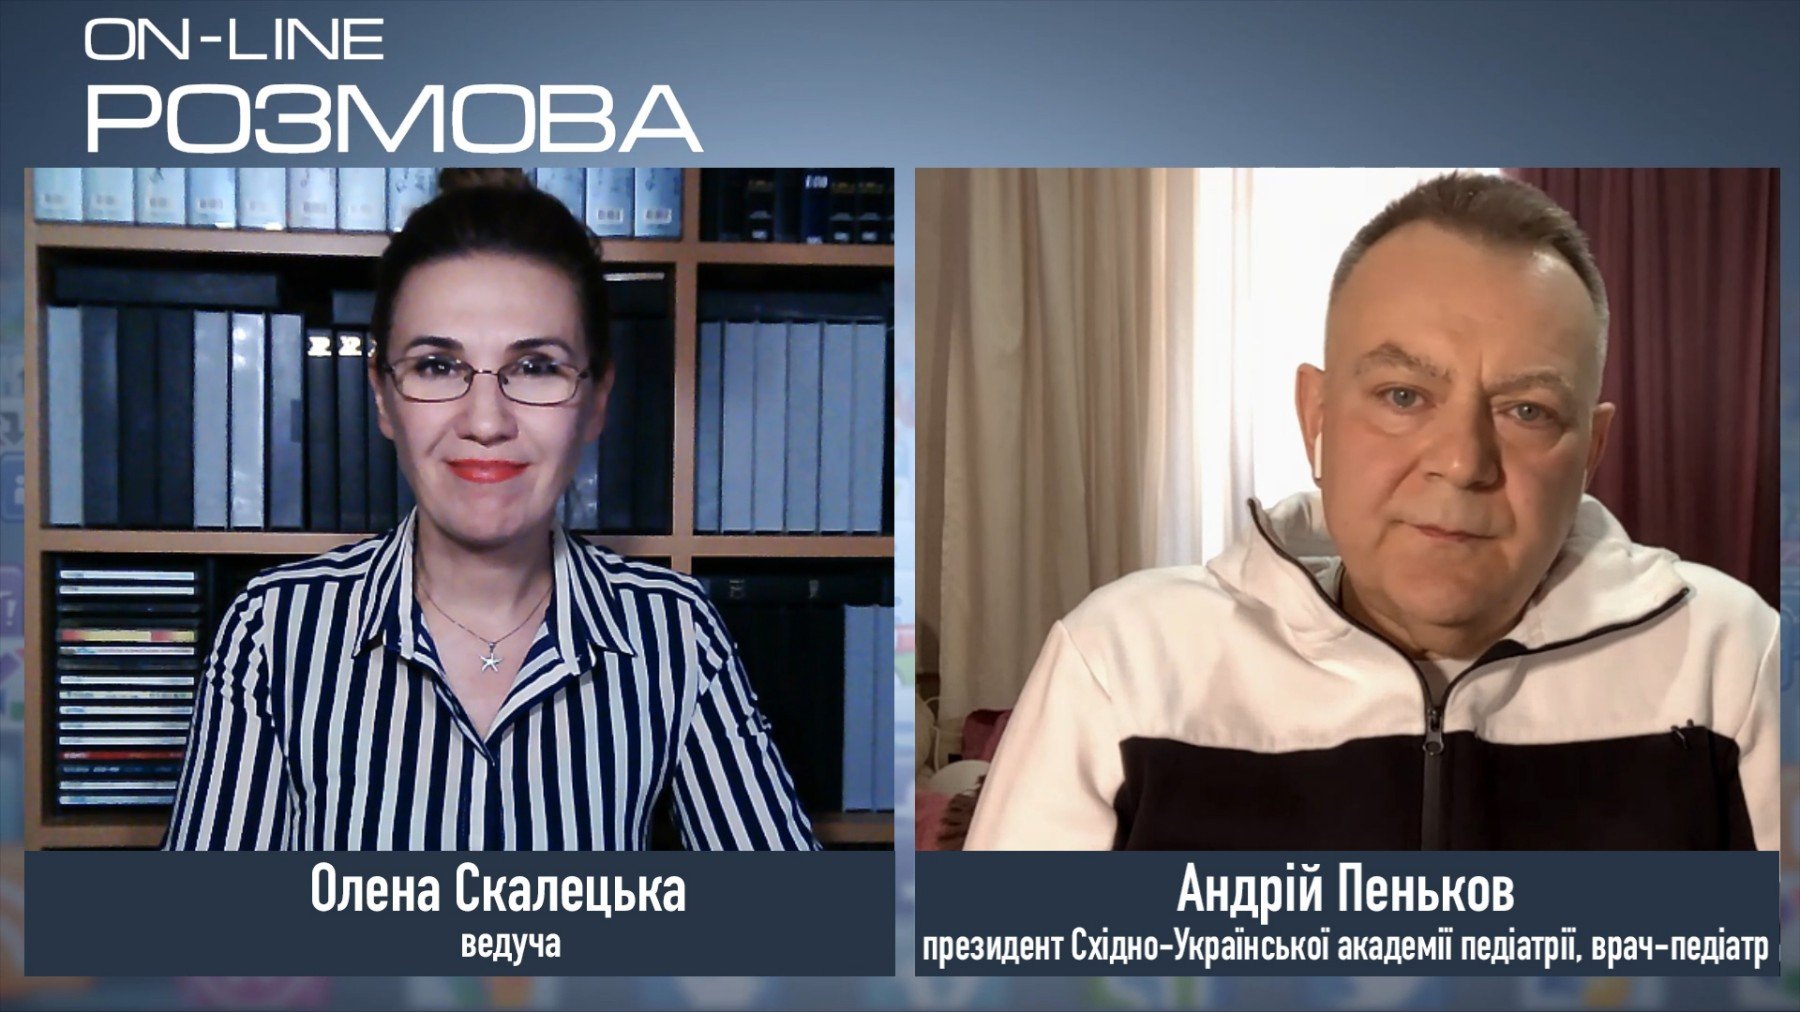 Андрей Пеньков о коронавирусе, симптомах, лечении, пике эпидемии в Украине